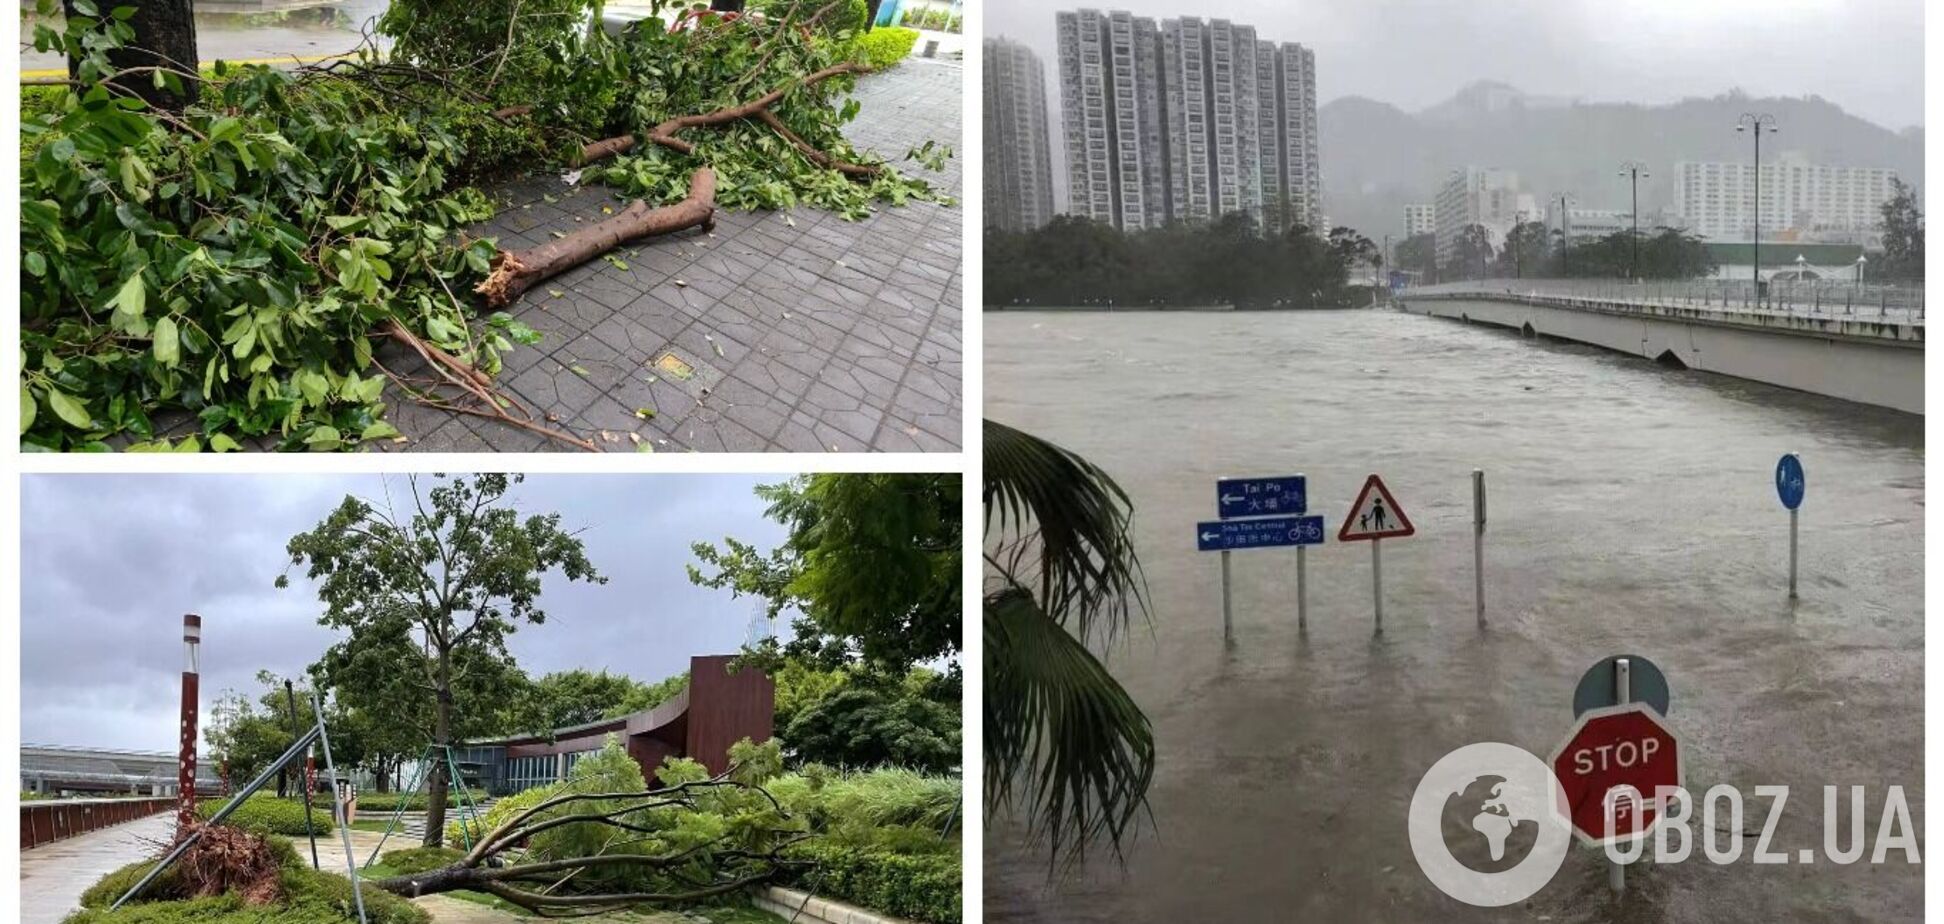 Швидкість вітру сягала 200 км/год: у Китаї через супертайфун евакуювали 900 тис. осіб, десятки людей постраждали. Фото і відео 